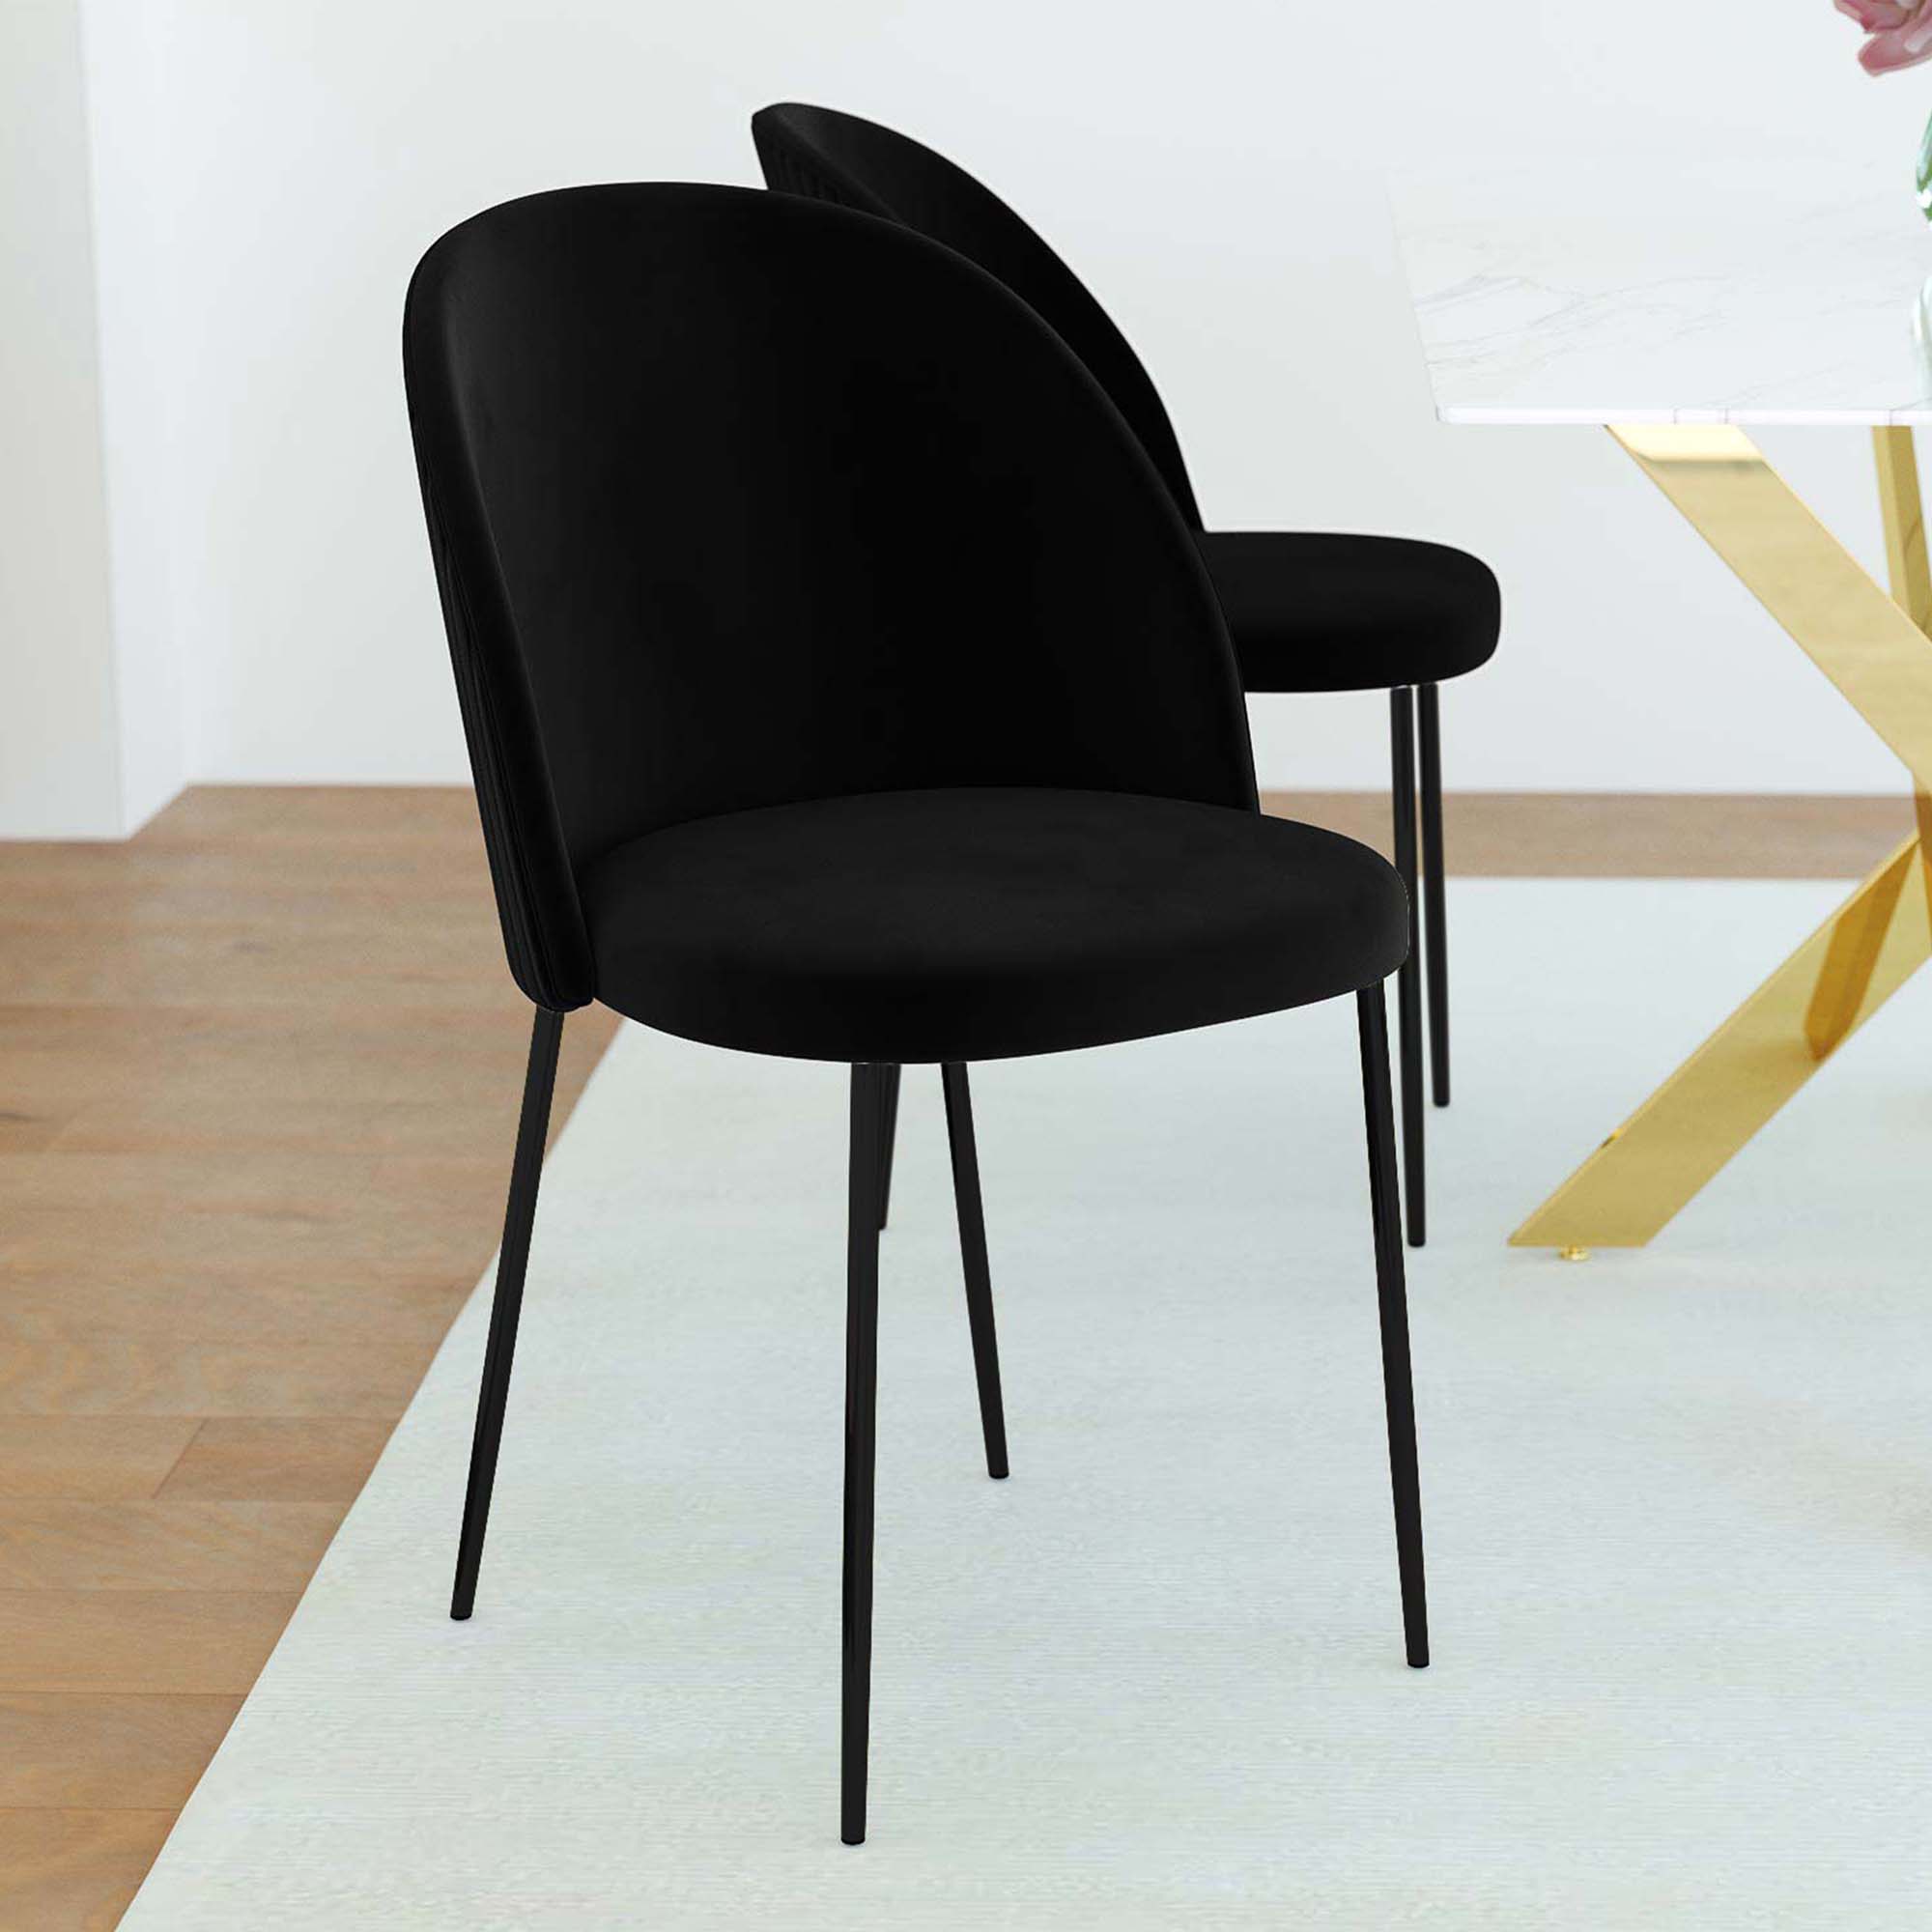 Chaise de cuisine BRENDA noire - Chaise moderne